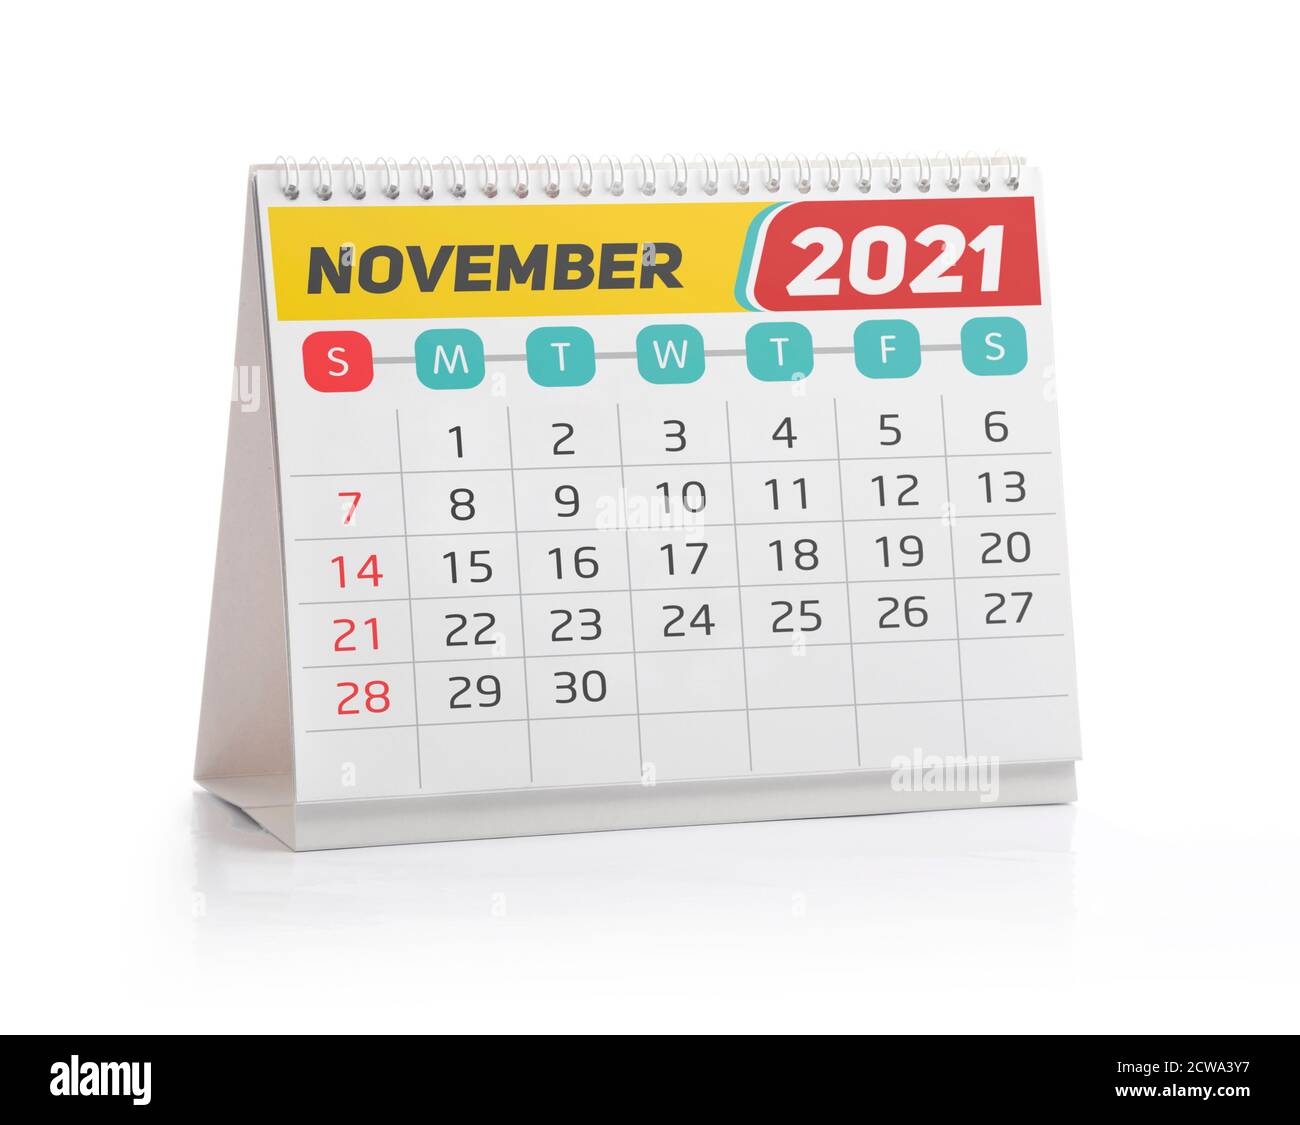 November 2021 Office Kalender isoliert auf Weiß Stockfoto